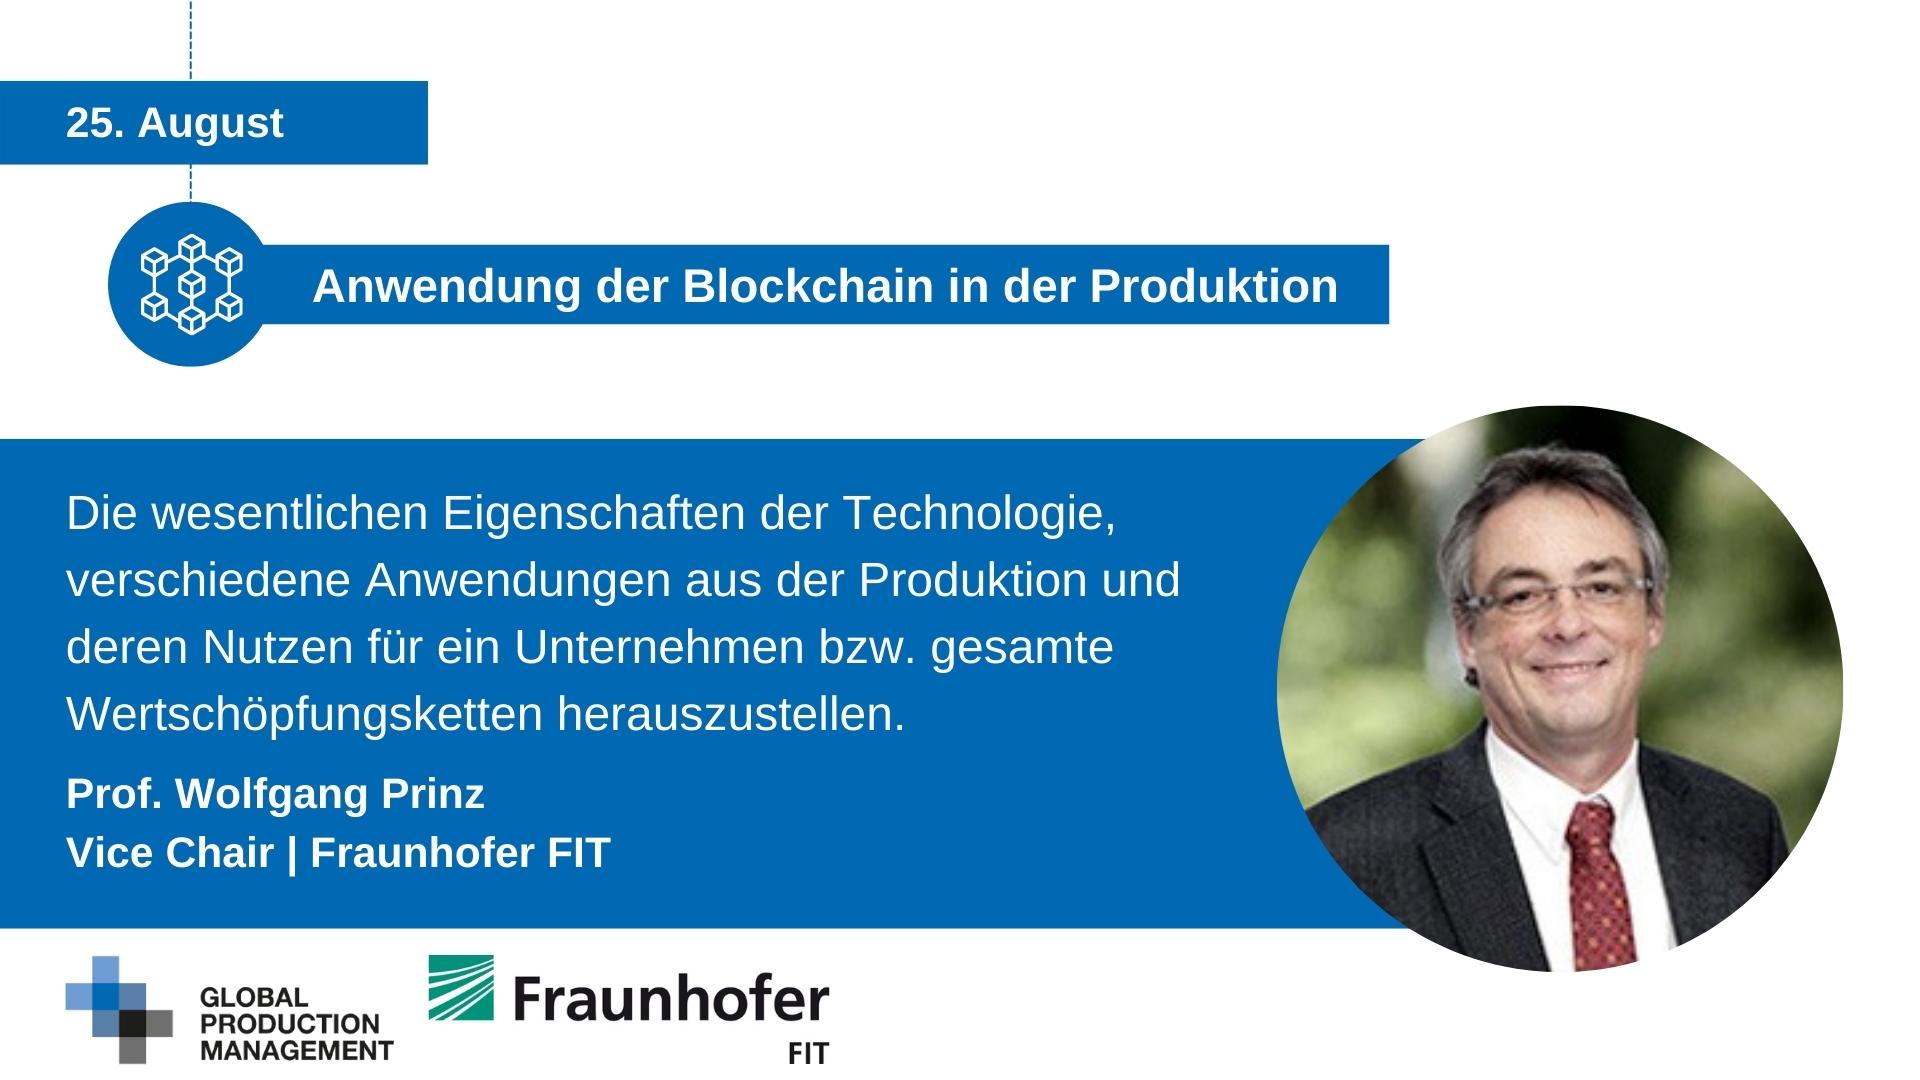 Web-Seminar-Blockchain-in-Production-Professor-Prinz-1 Anwendung der Blockchain in der Produktion  